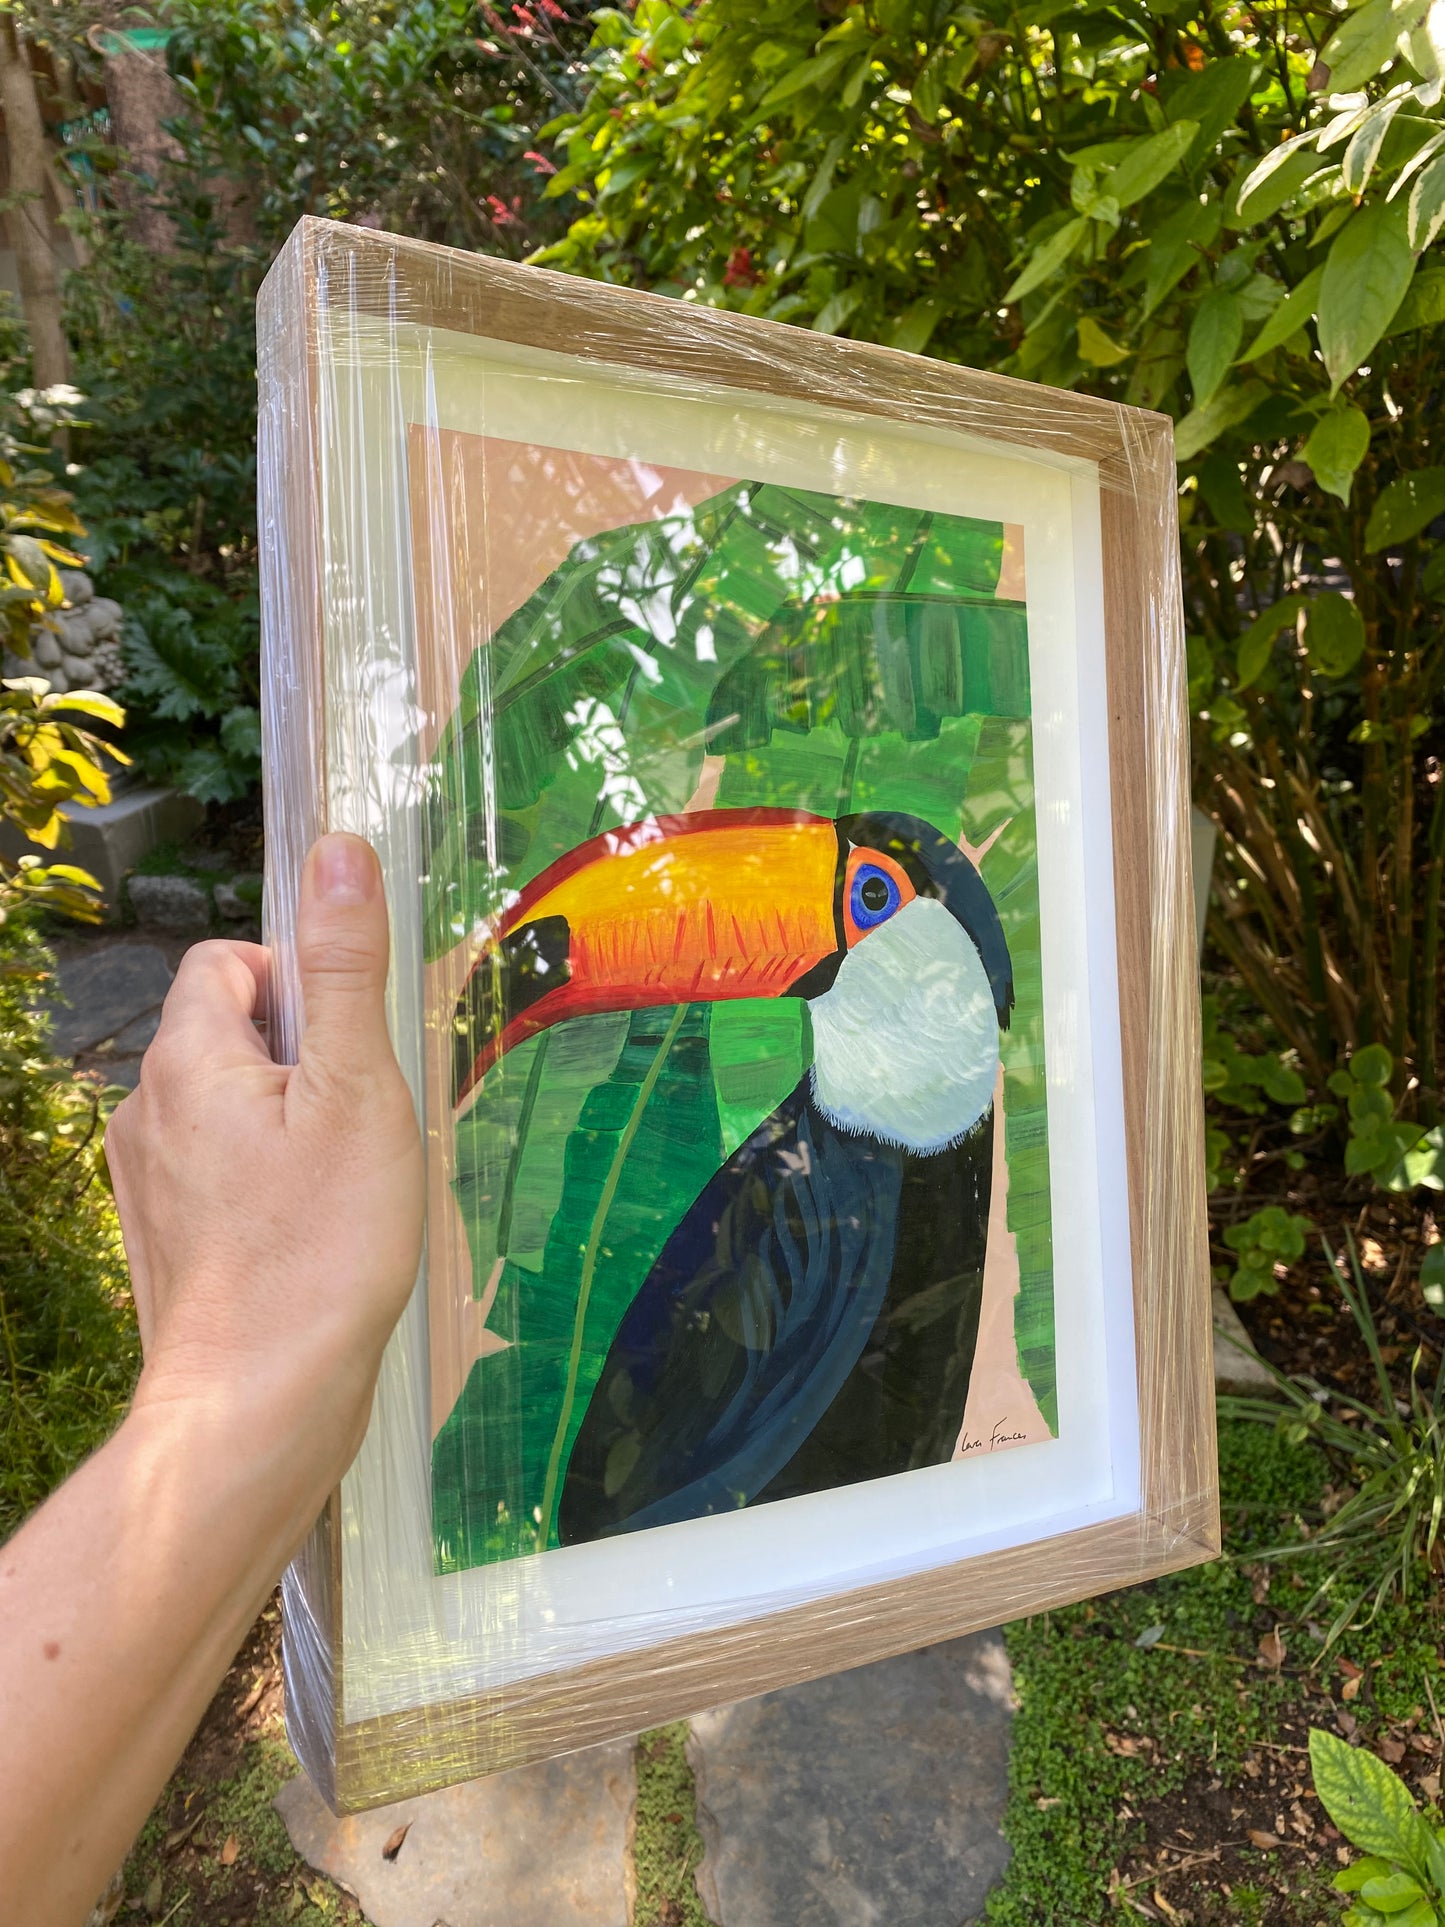 Toucan (Framed)